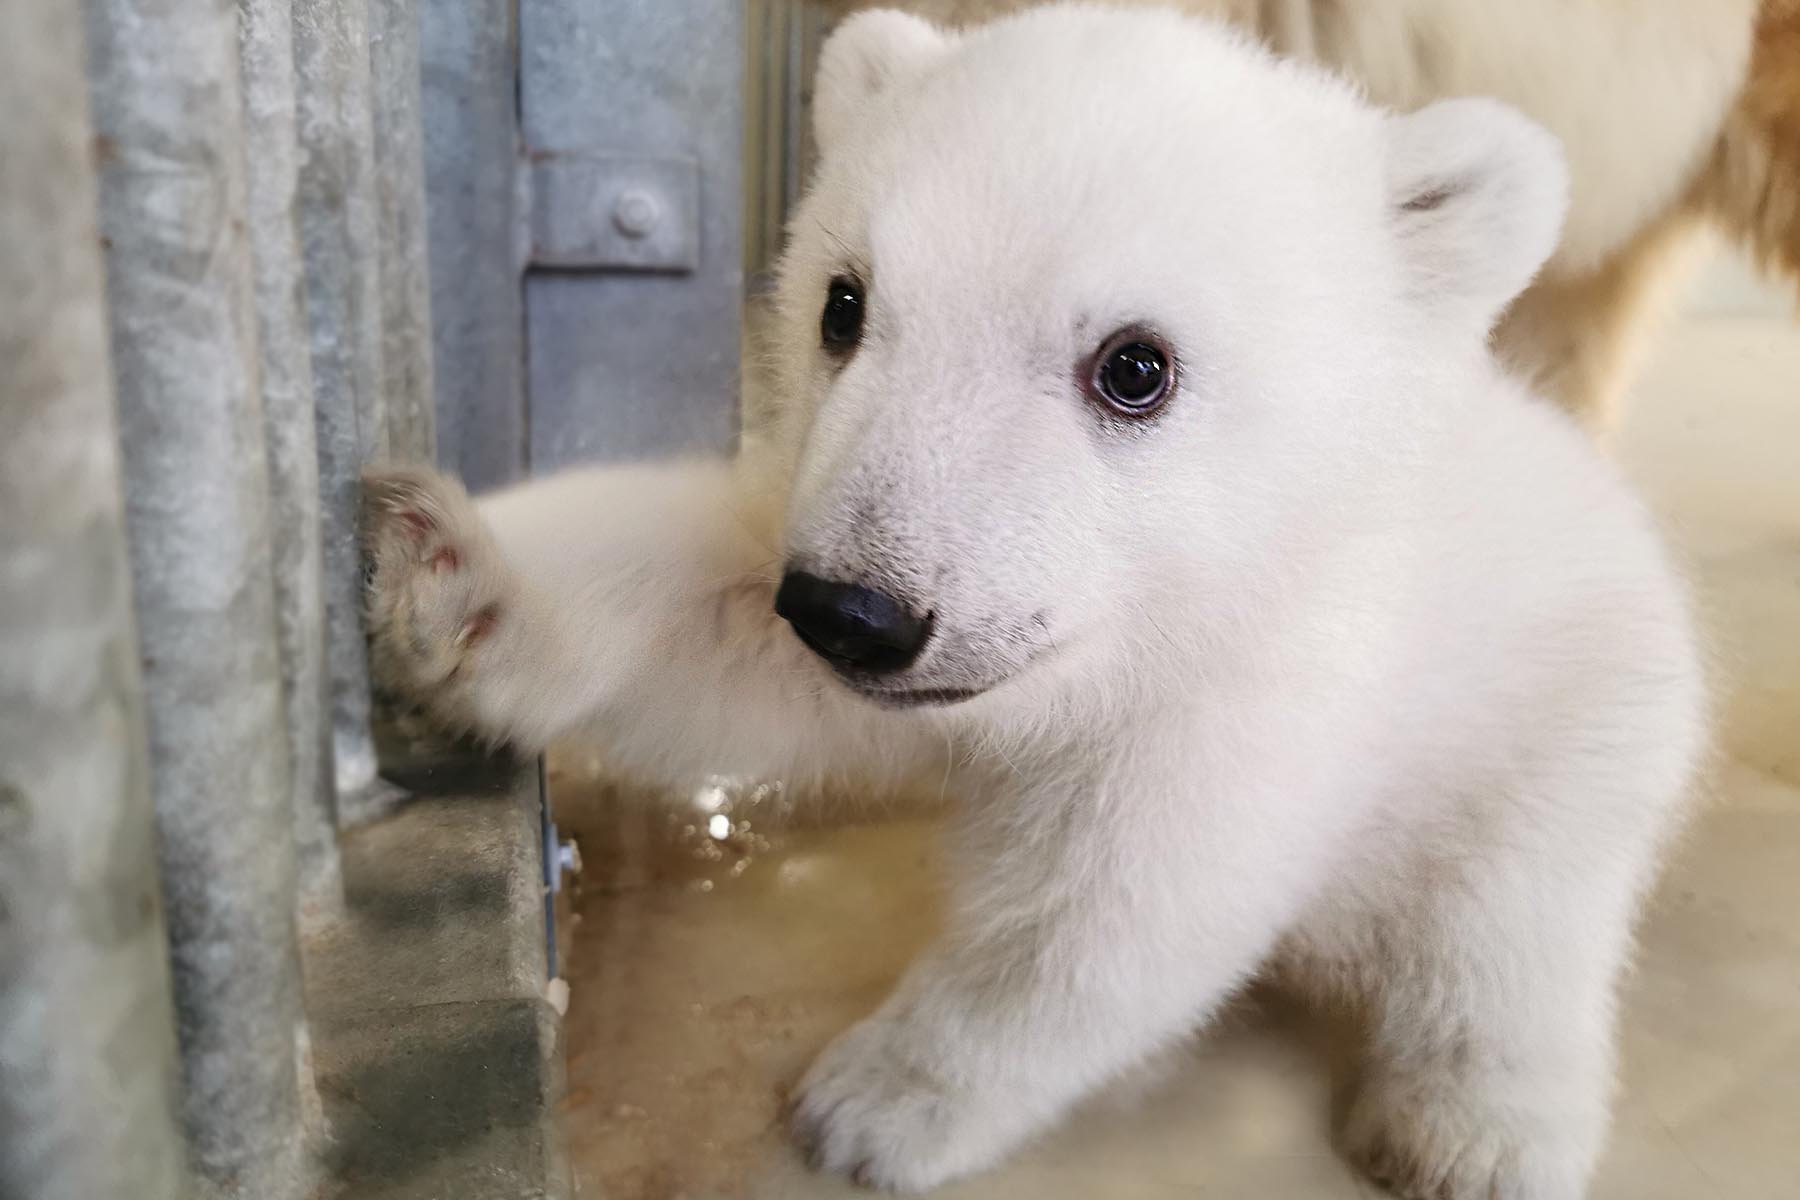 Tierpark Hagenbeck Eisbärenbaby kann jetzt live beobachtet werden